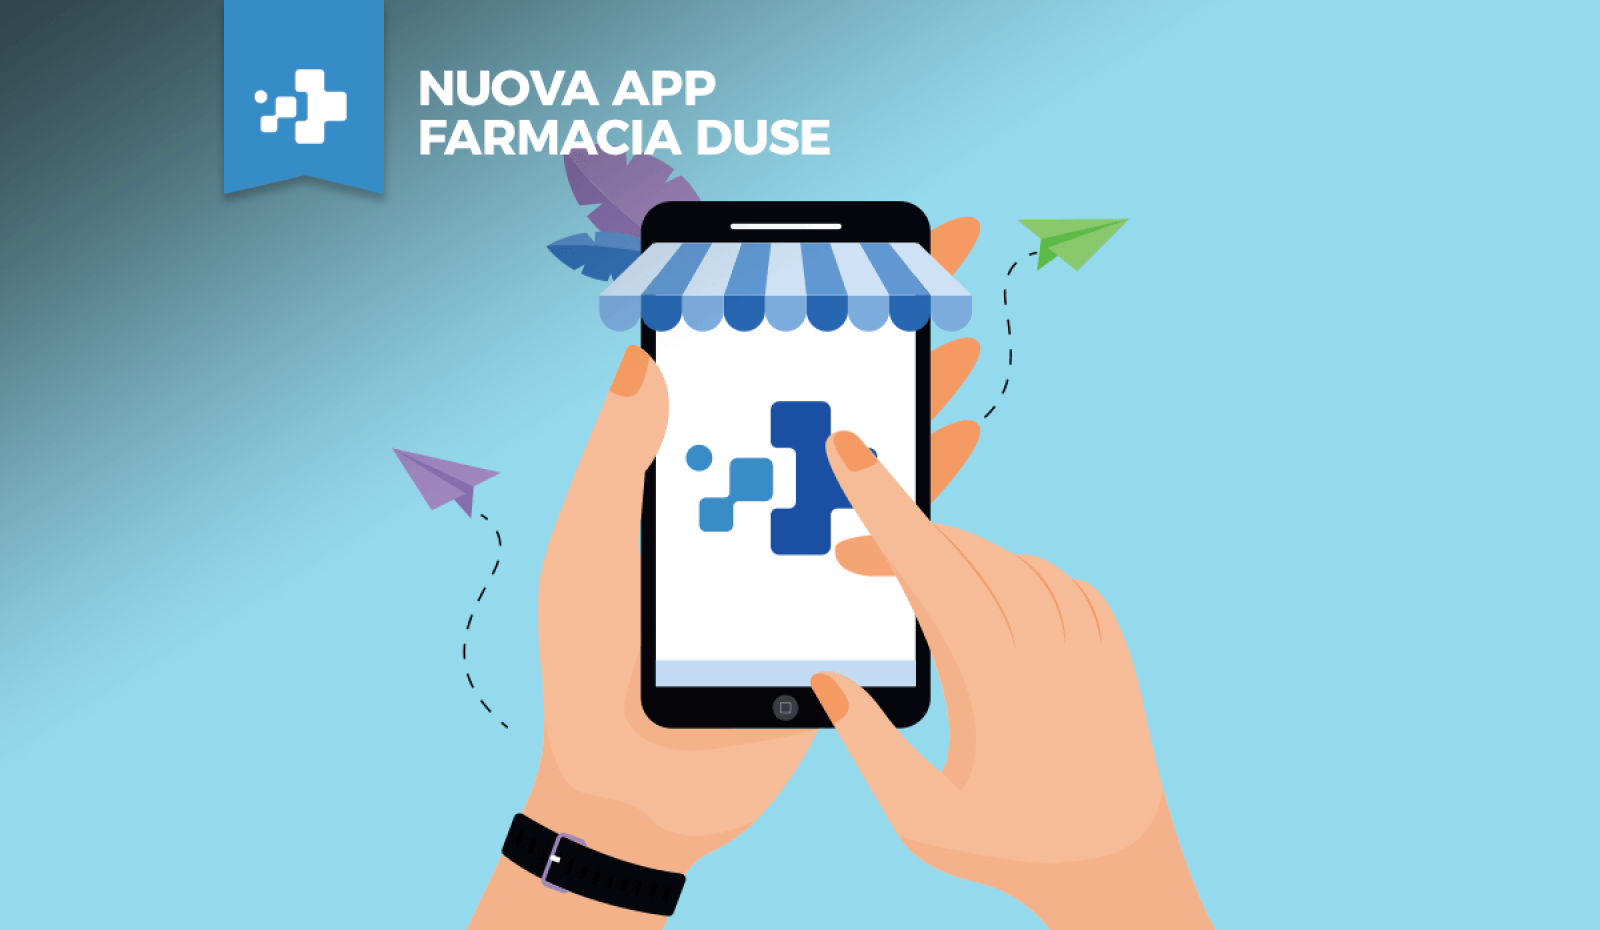 nuova app farmacia duse ios android farmacia evoluta